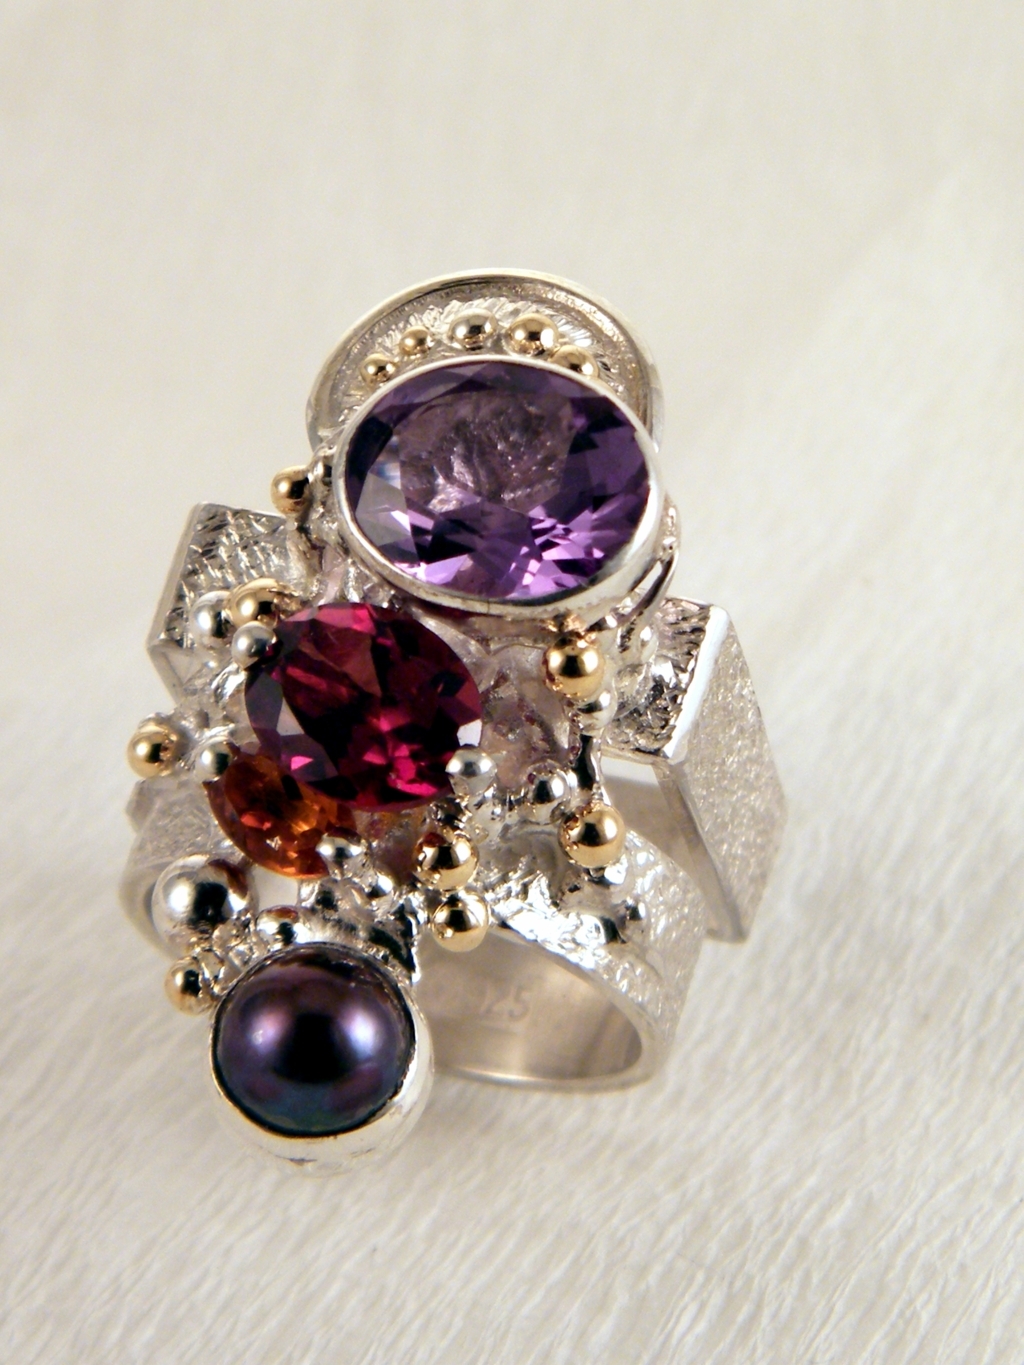 gregory pyra piro handgjord ring 2631, ring med ametist, ring med granat, ring med pärlor, silver och guld smycken, silver och guld ring